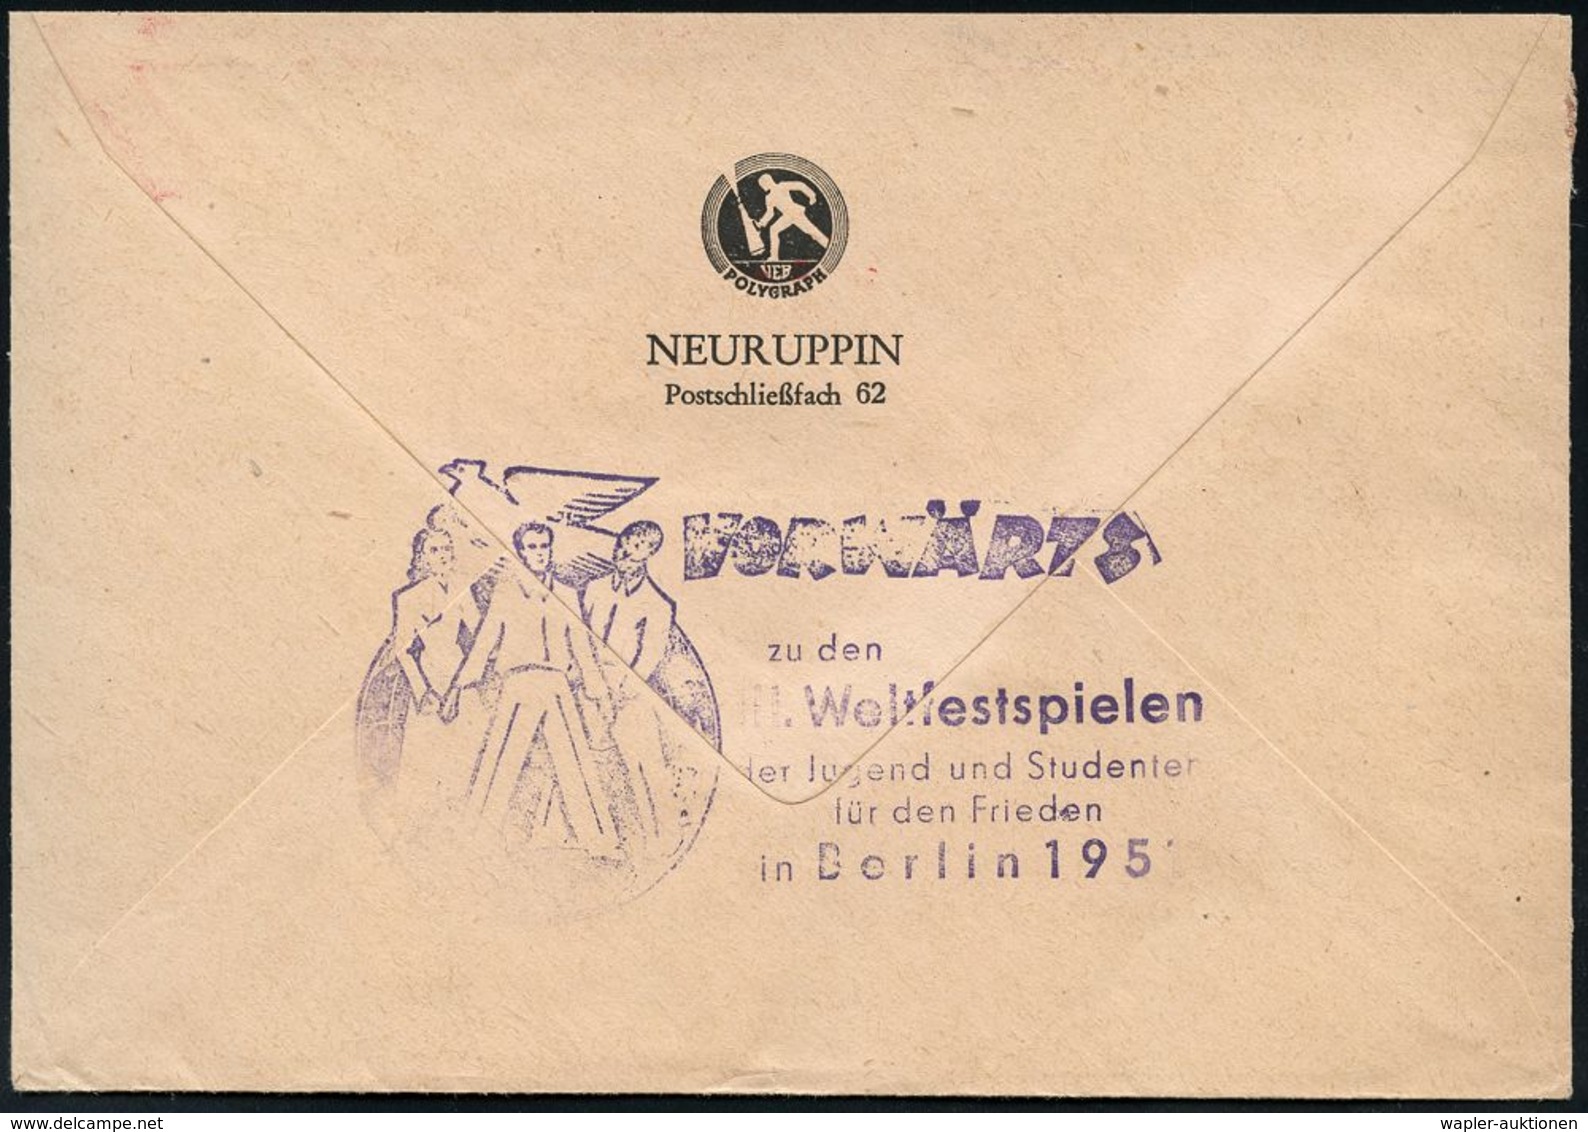 FEUERWEHR / BRANDVERHÜTUNG & -BEKÄMPFUNG : NEURUPPIN/ Wenn's Brennt/ MINIMAX Löscht! 1951 (10.7.) AFS = Hand-Feuerlösche - Sapeurs-Pompiers